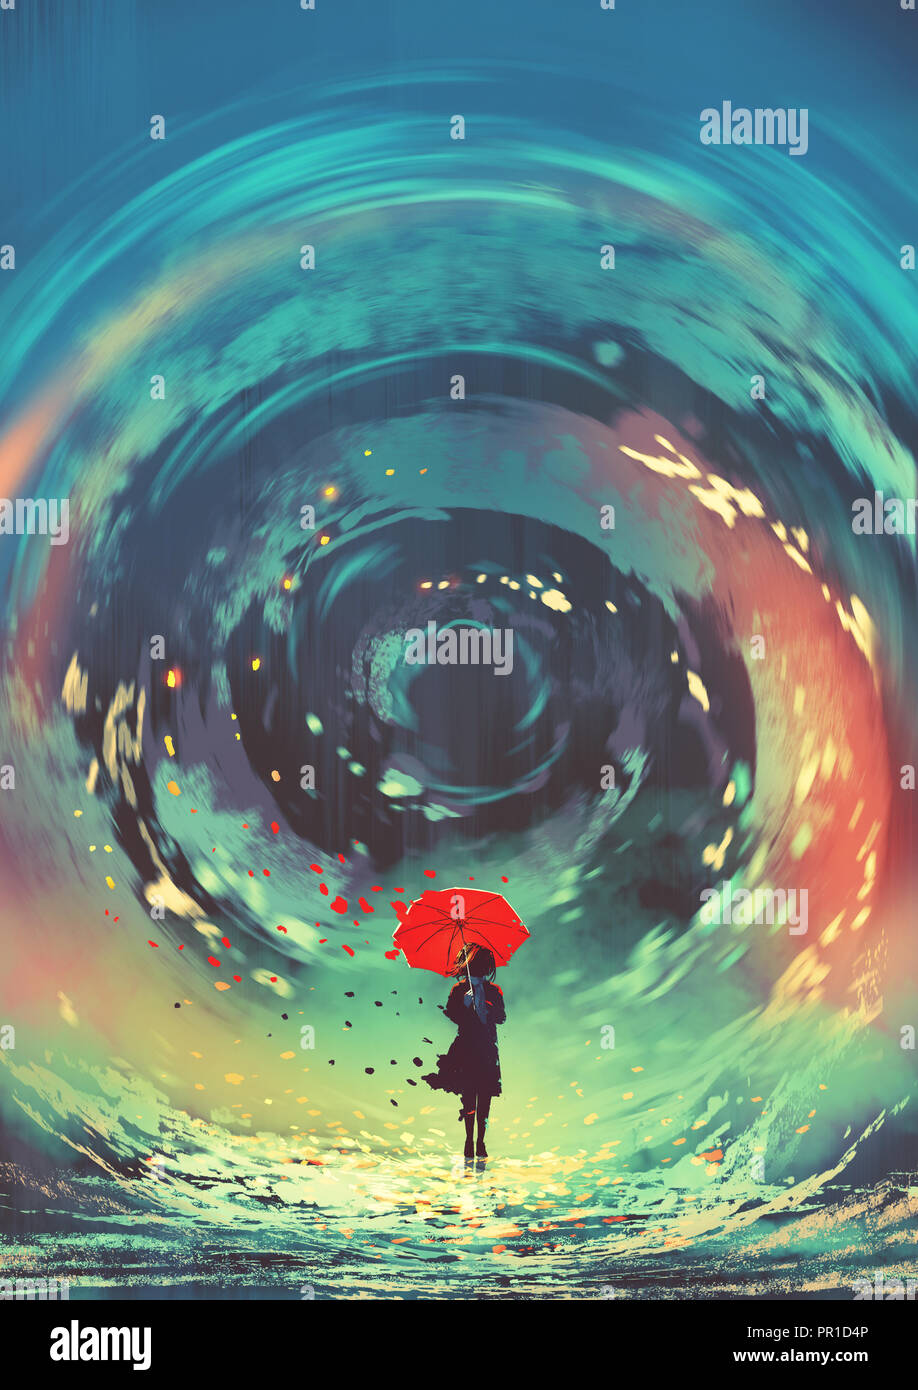 Ragazza con ombrello rosso fa un moto vorticoso dell'acqua nel cielo, arte digitale stile, illustrazione pittura Foto Stock